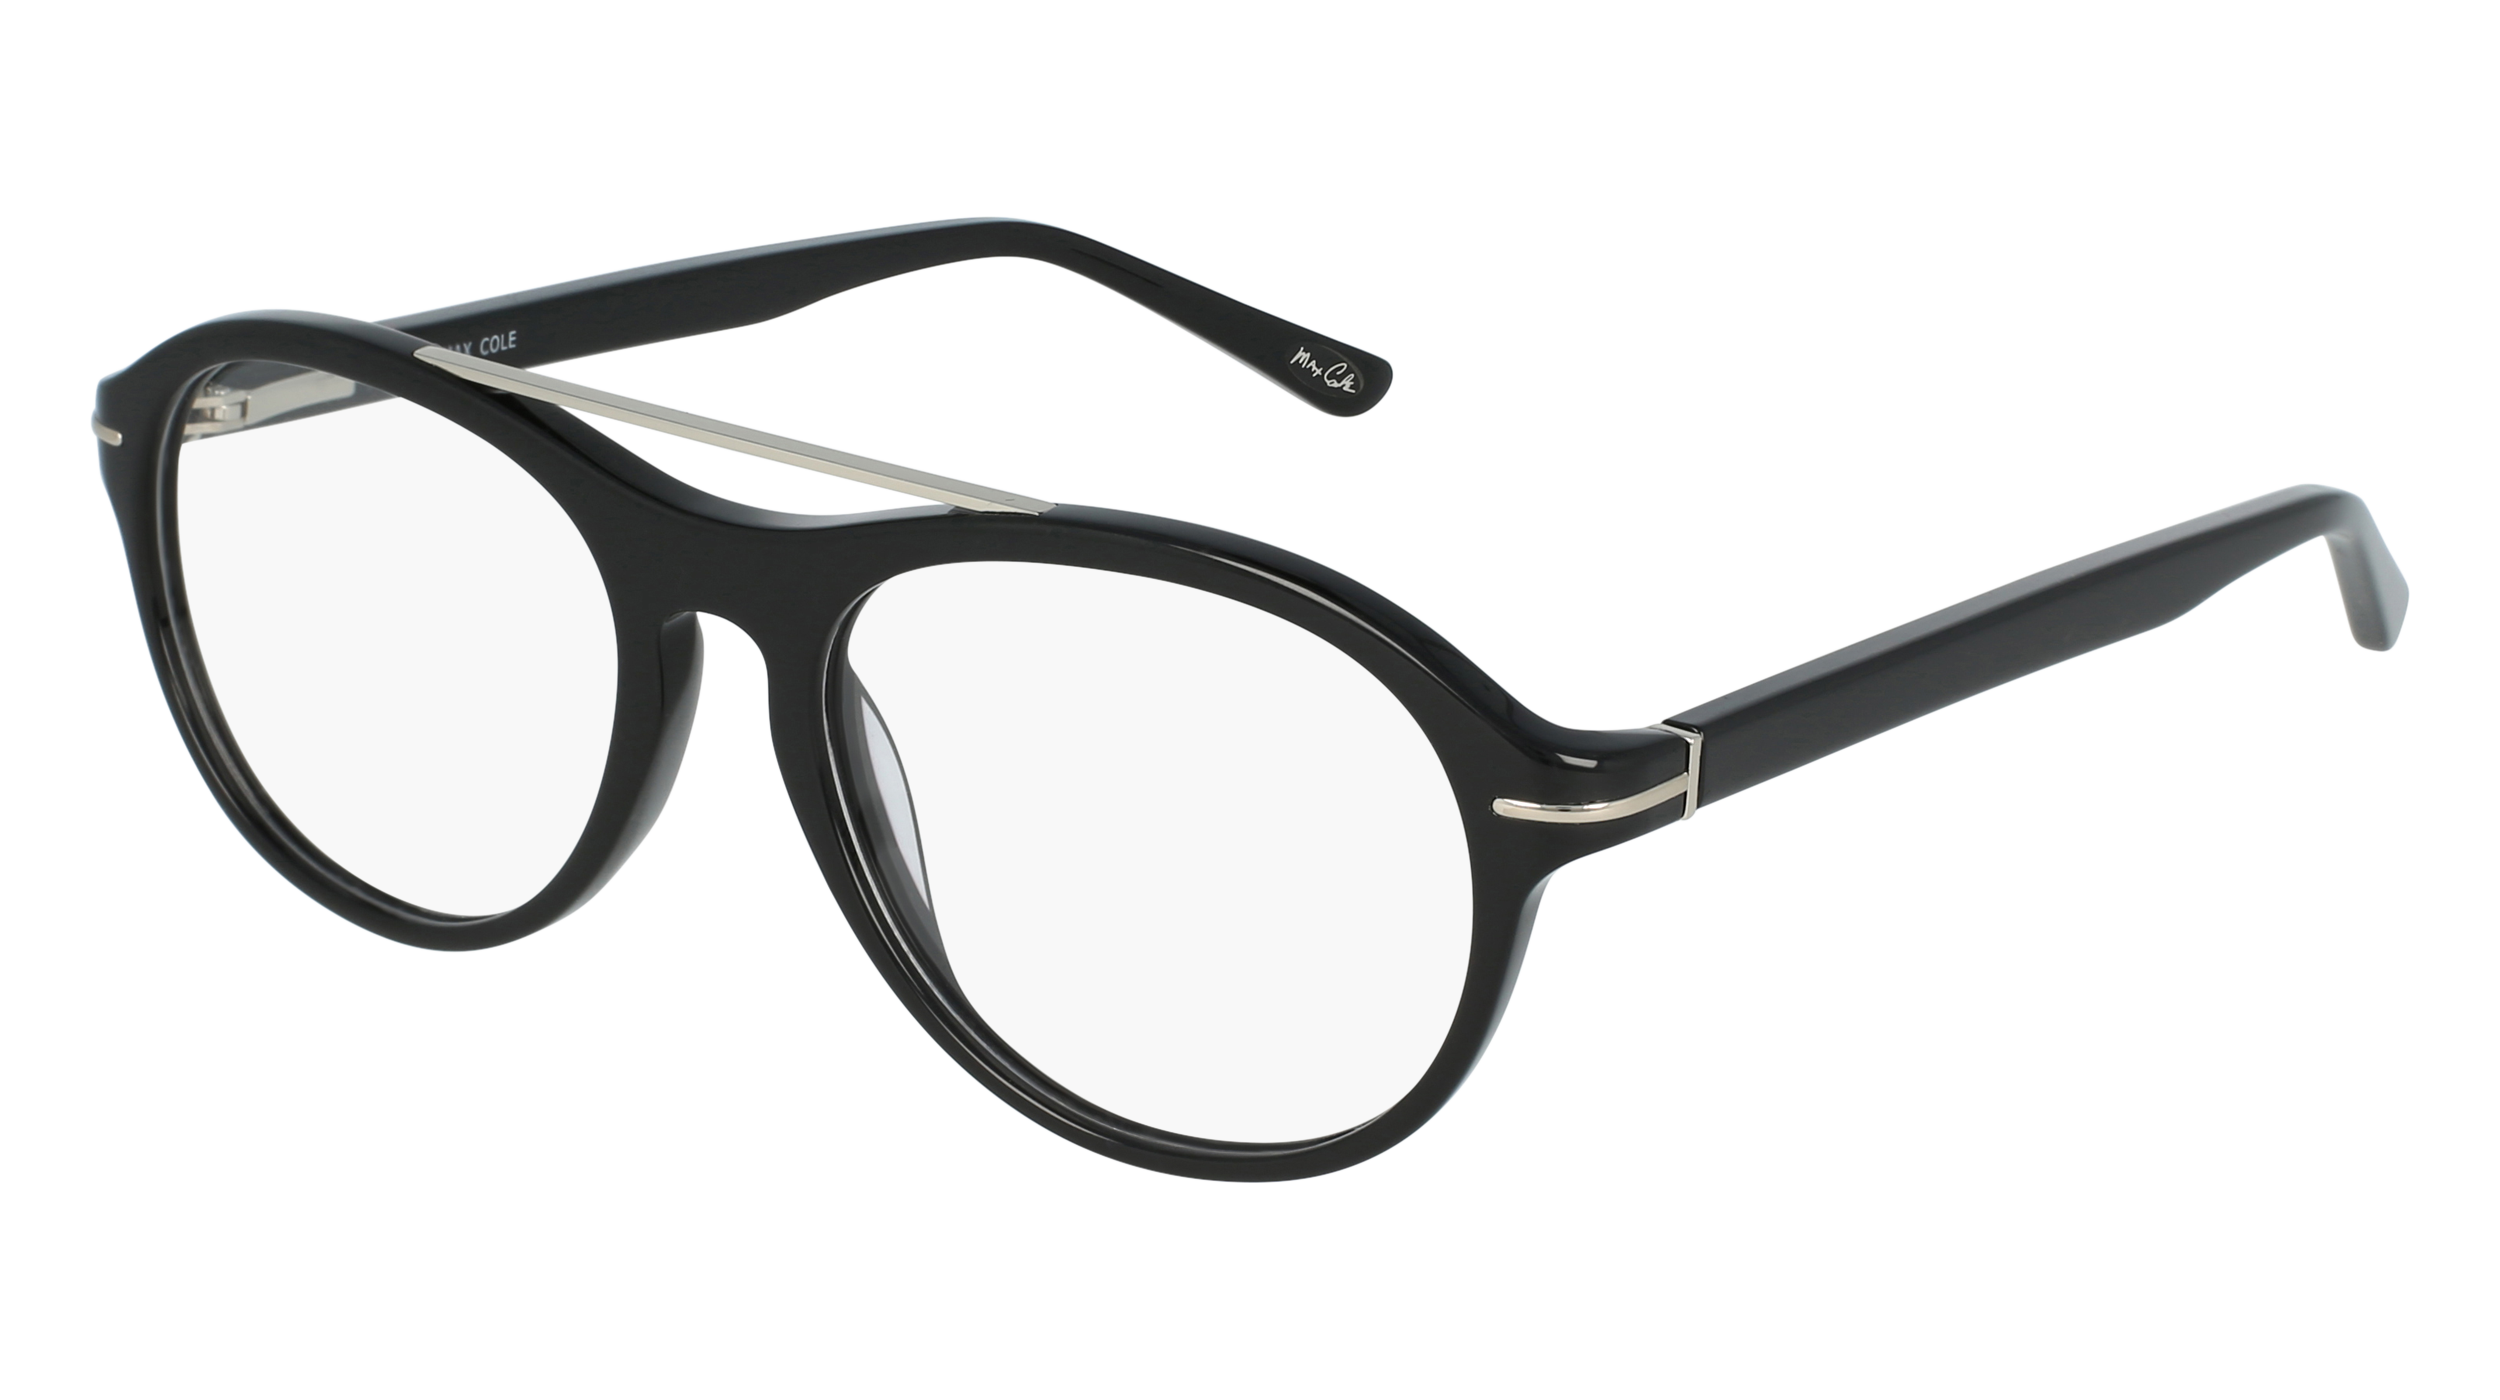 M MC 1503 men's eyeglasses (from the side)